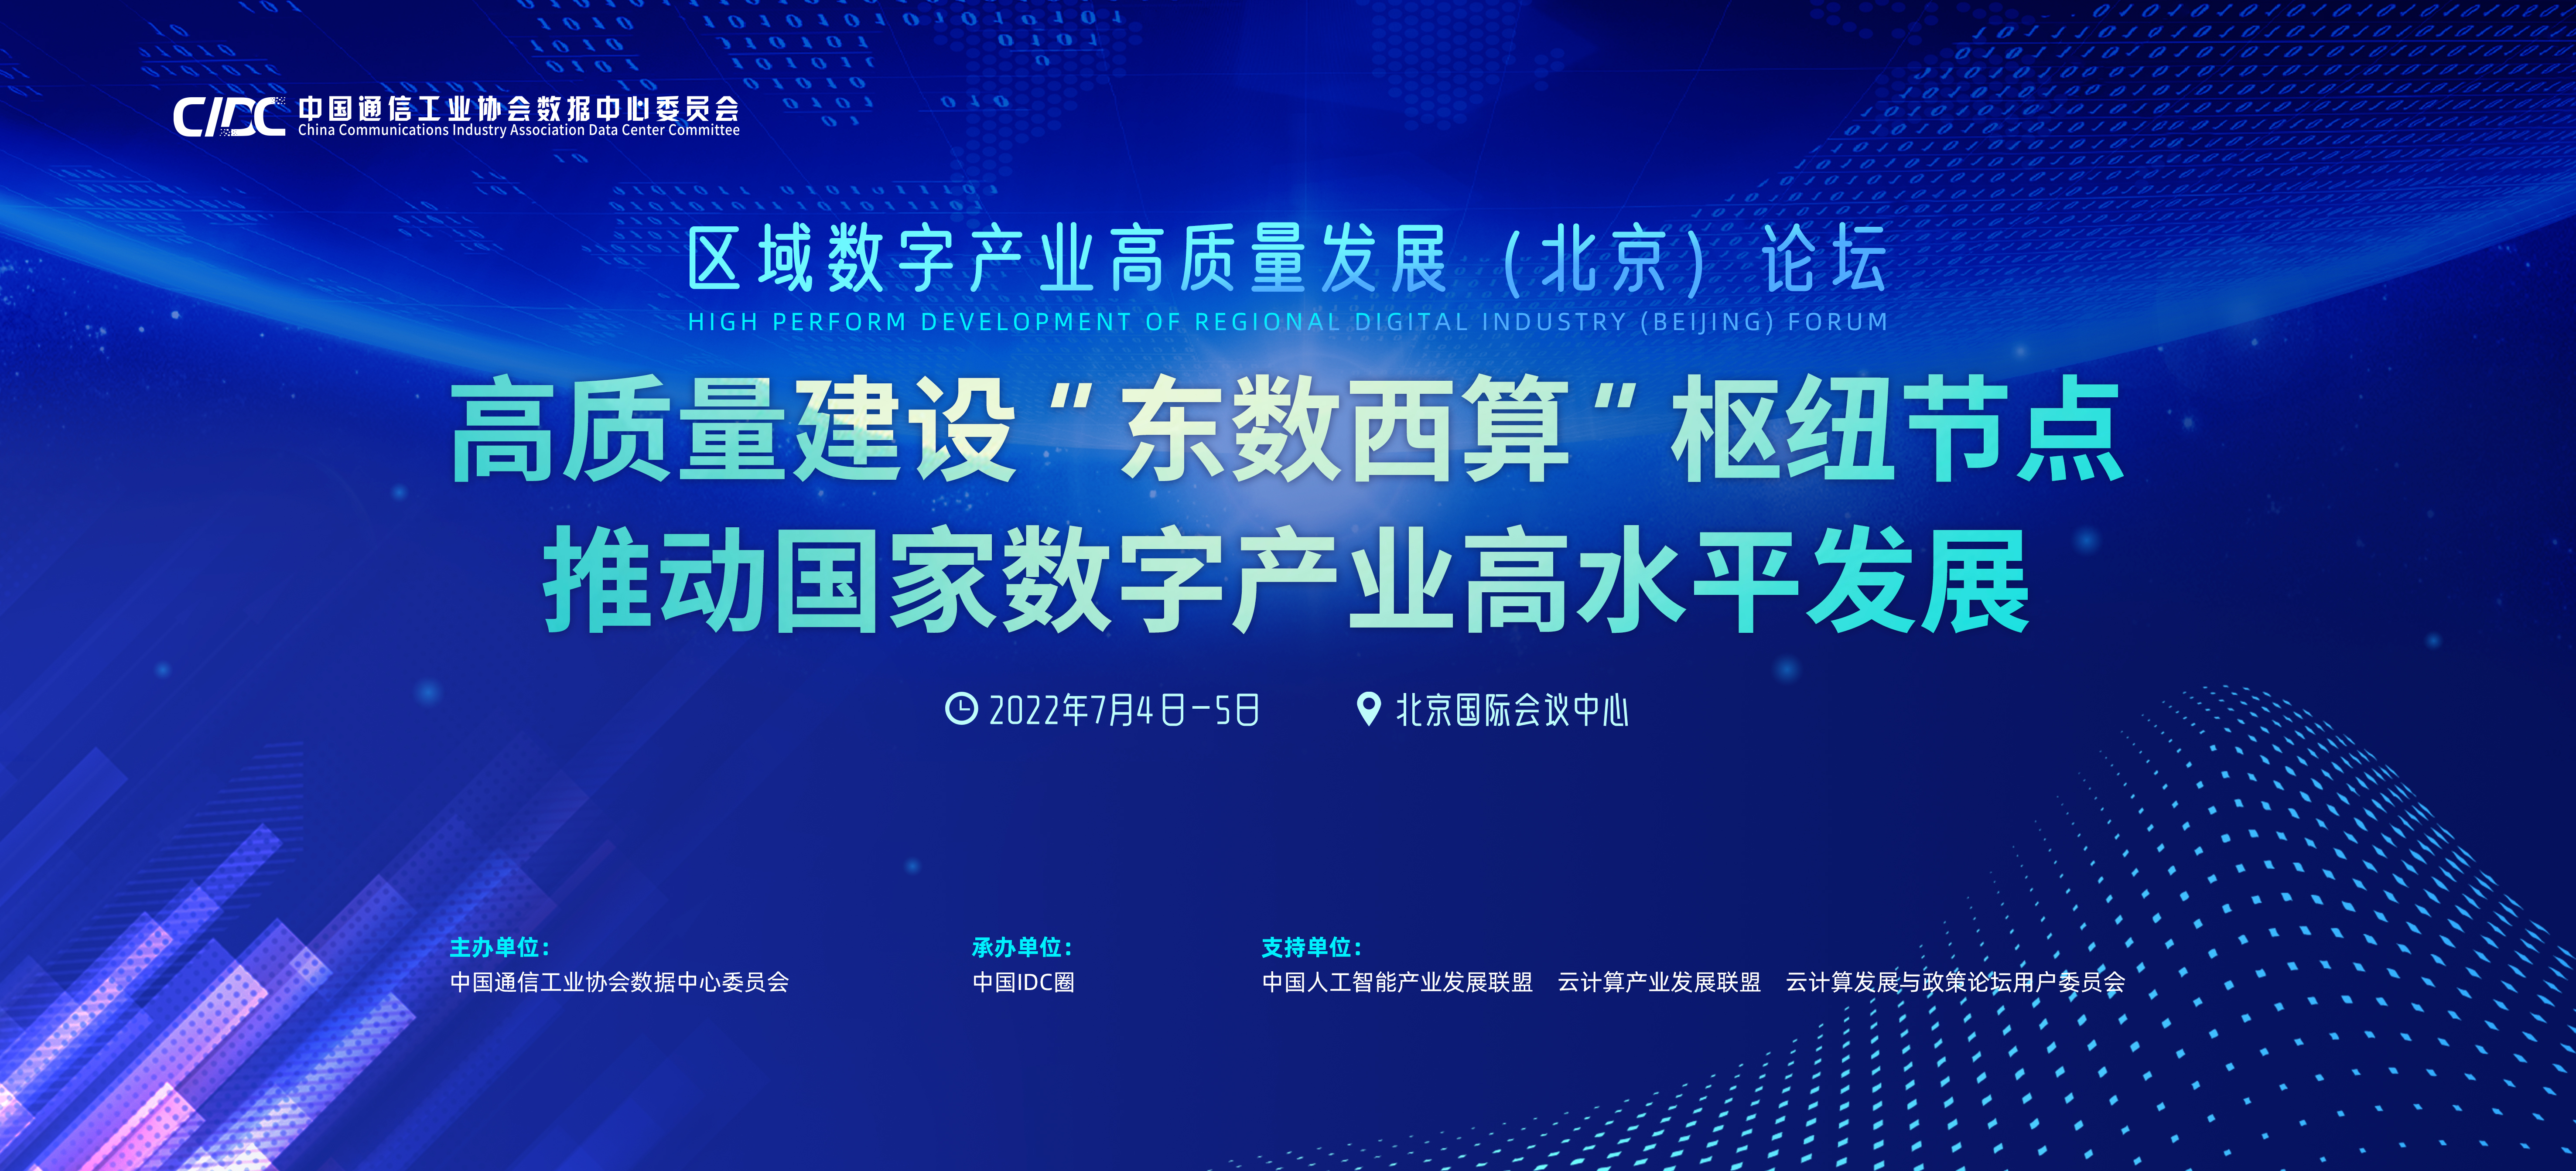 聚焦東數西算 區域數字產業高質量發展(北京)論壇6亮點早知道-供商網